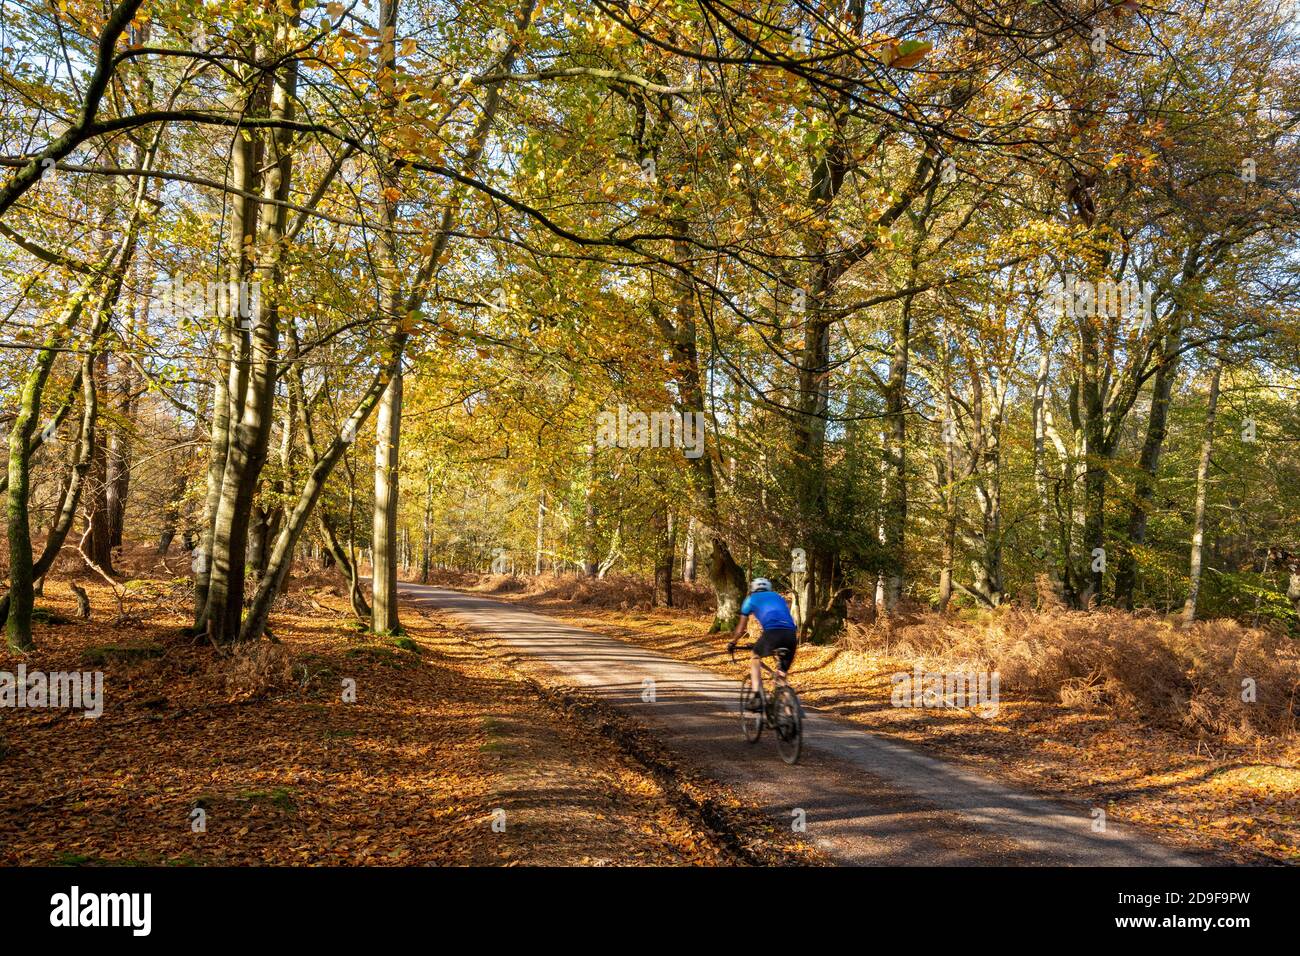 Cycliste longeant l'arboretum de Bolderwood, promenade ornementale dans le parc national de New Forest à l'automne, Hampshire, Angleterre, Royaume-Uni Banque D'Images